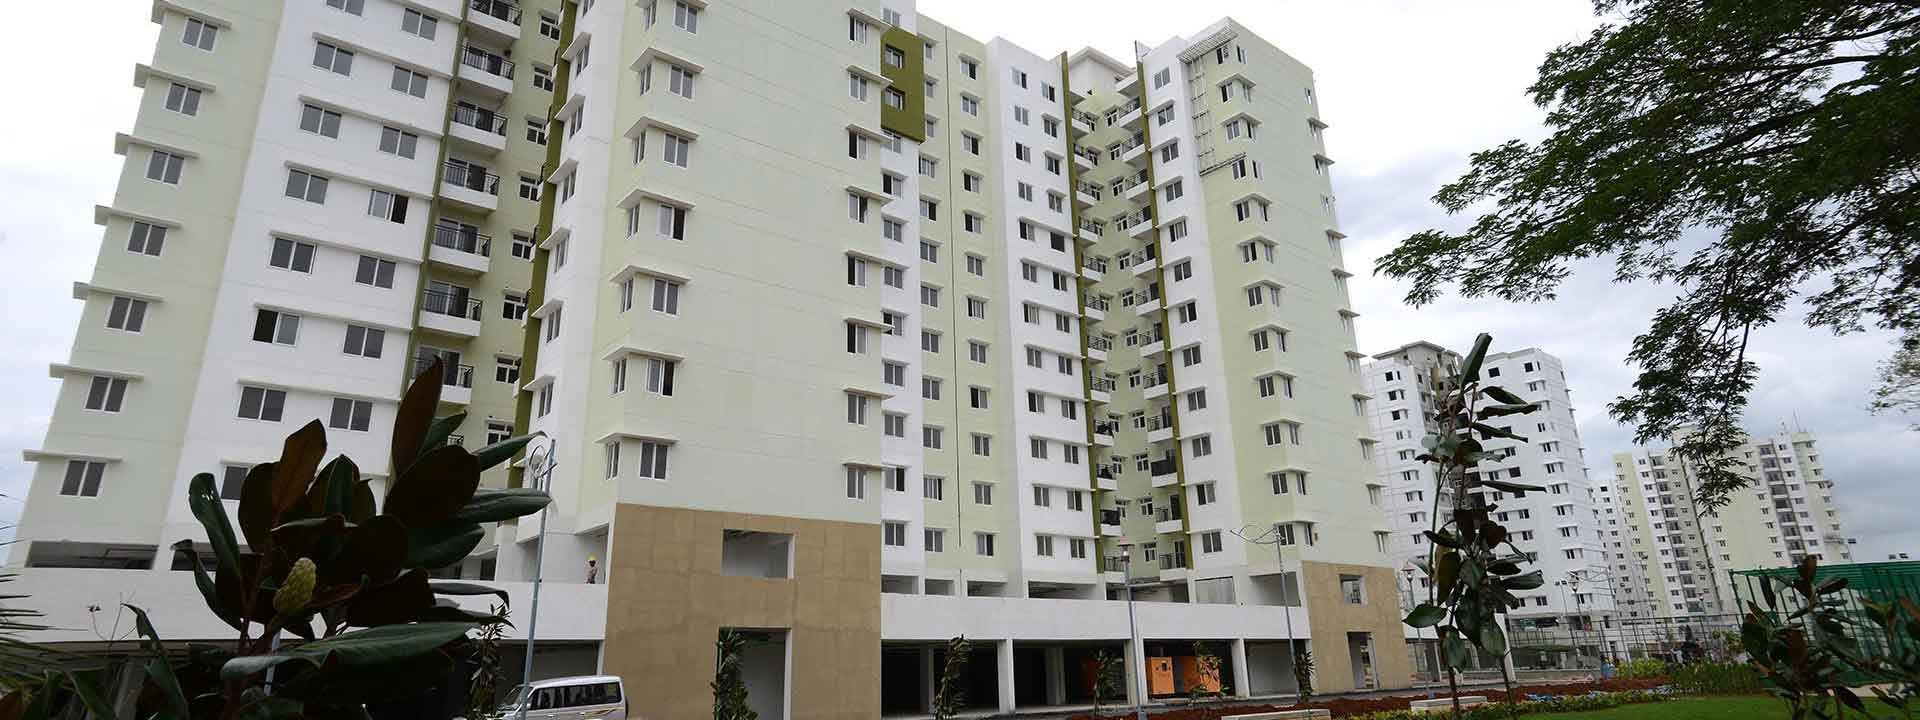 Provident Sunworth in Bengaluru- L&T Construction